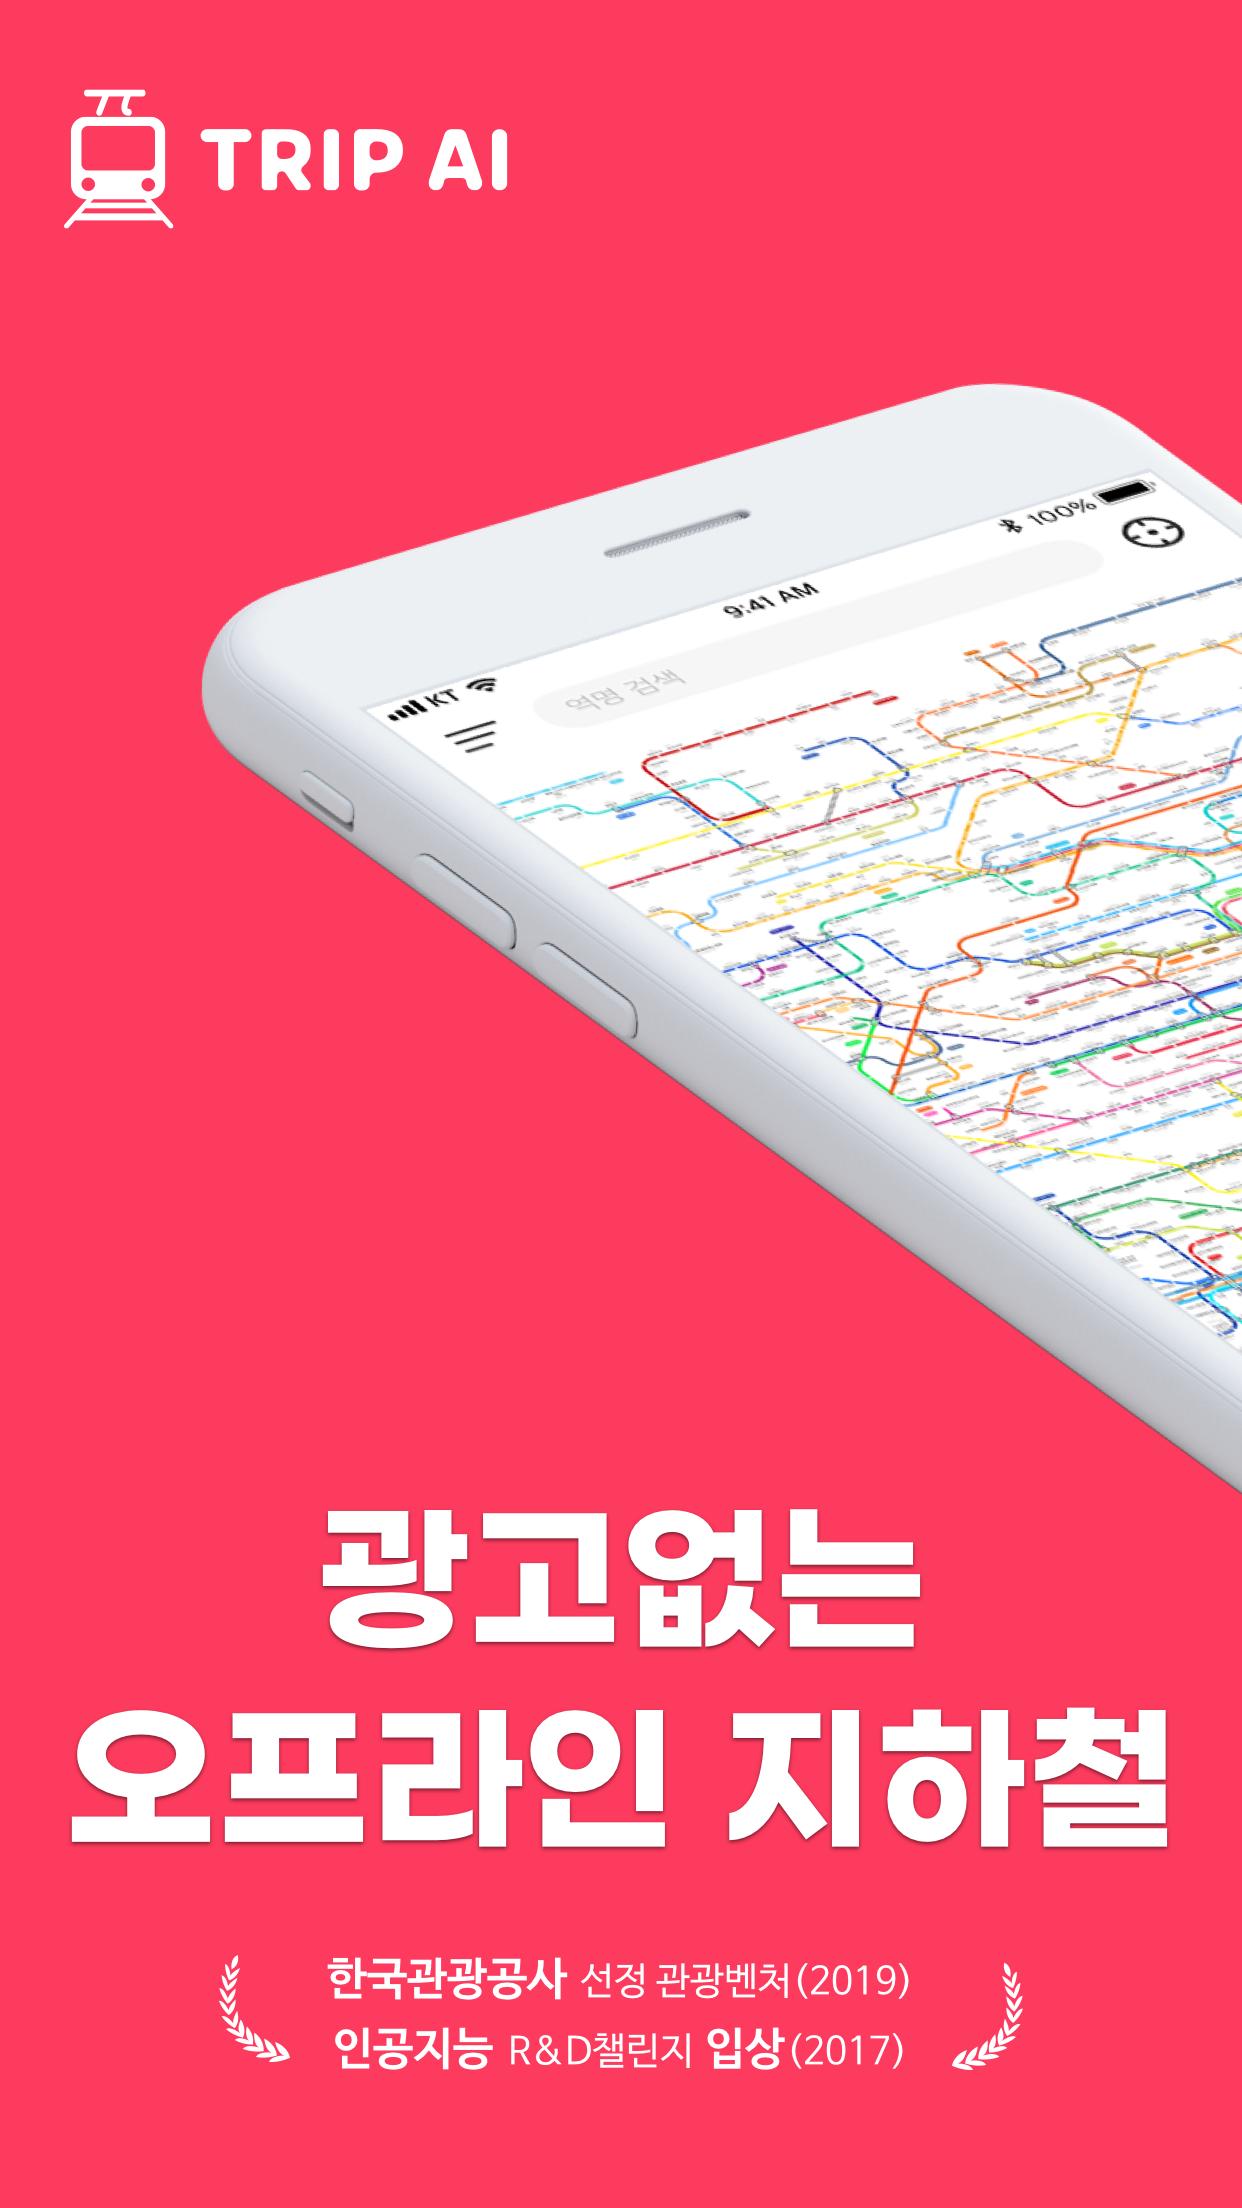 트리파이 지하철 - 광고없는 오프라인 지하철 길찾기 지도 네비게이션(+노선도 기차 시간표)